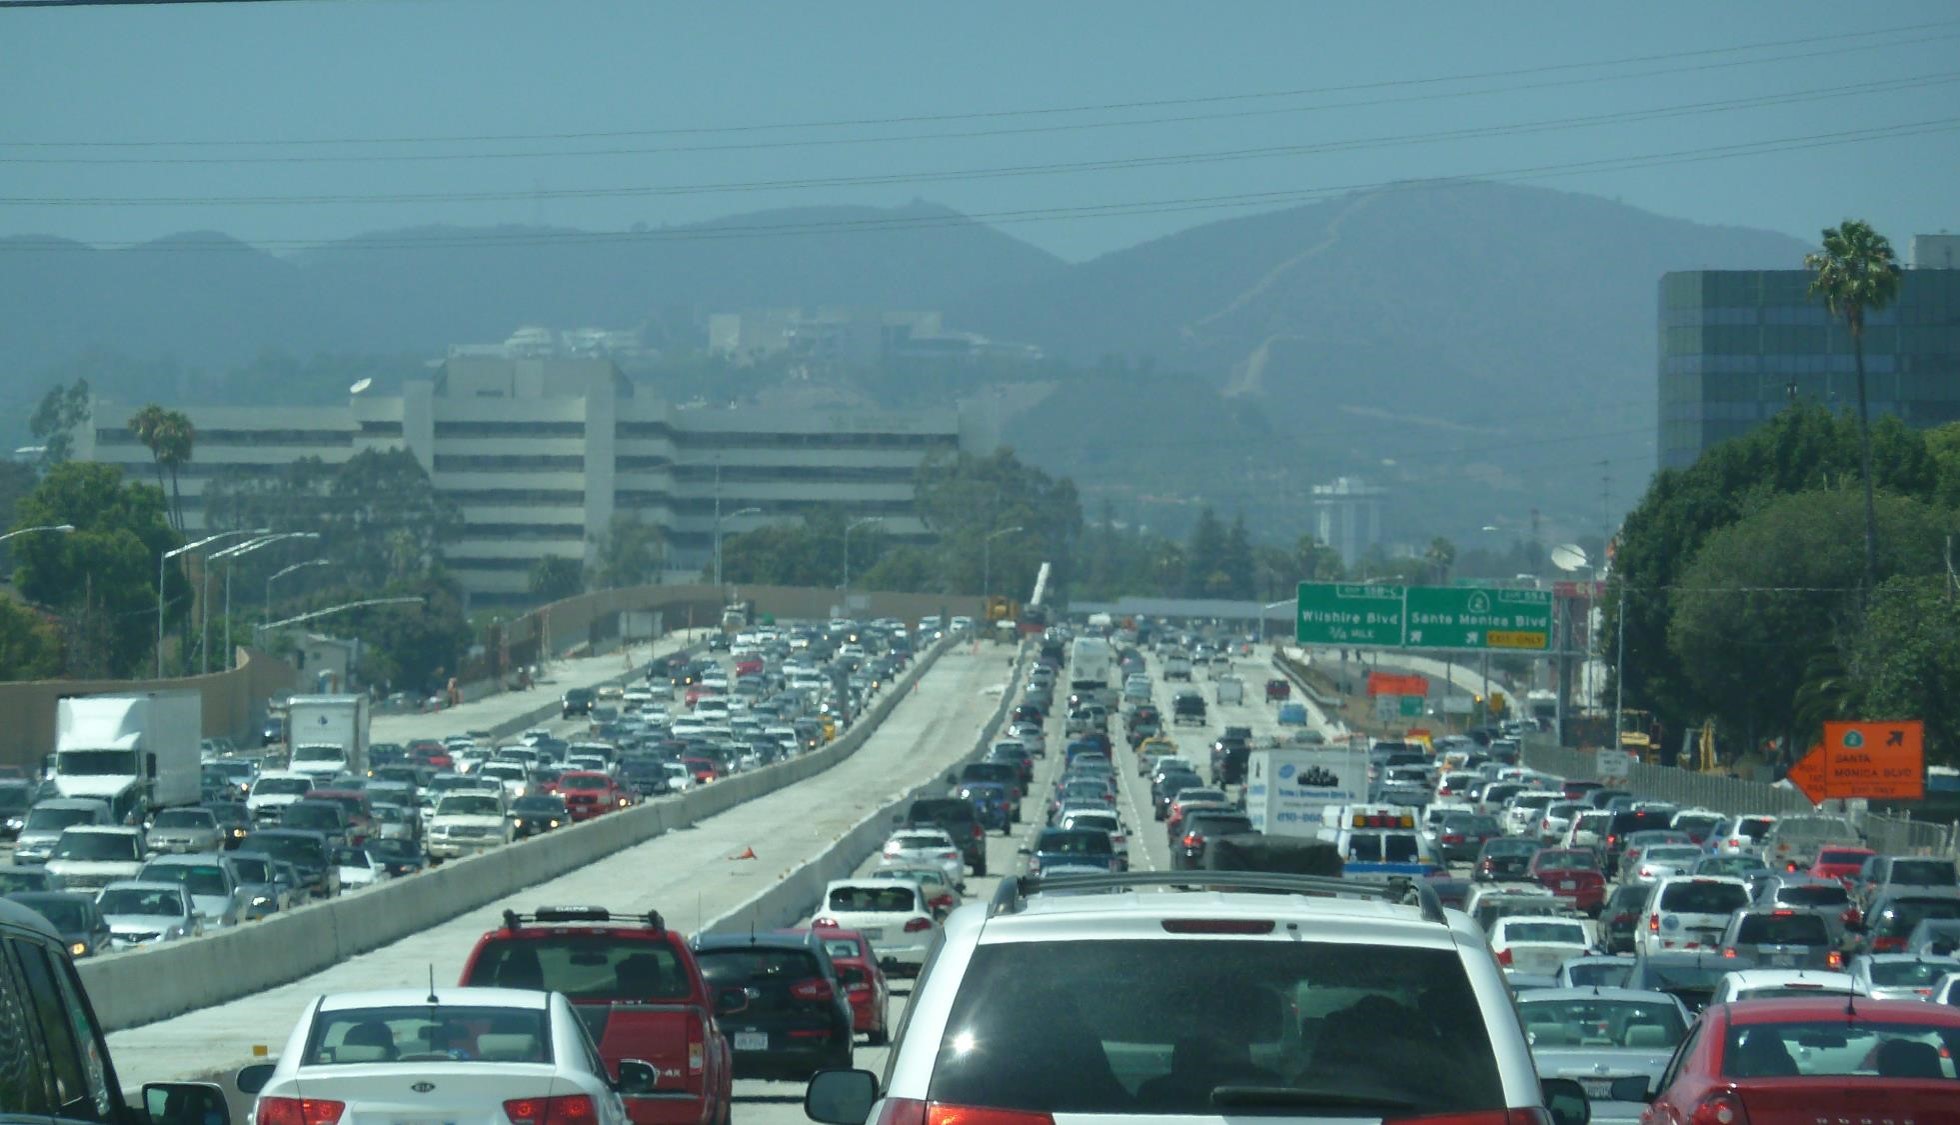 Trafic près de L.A. (crédit photo Lhom)